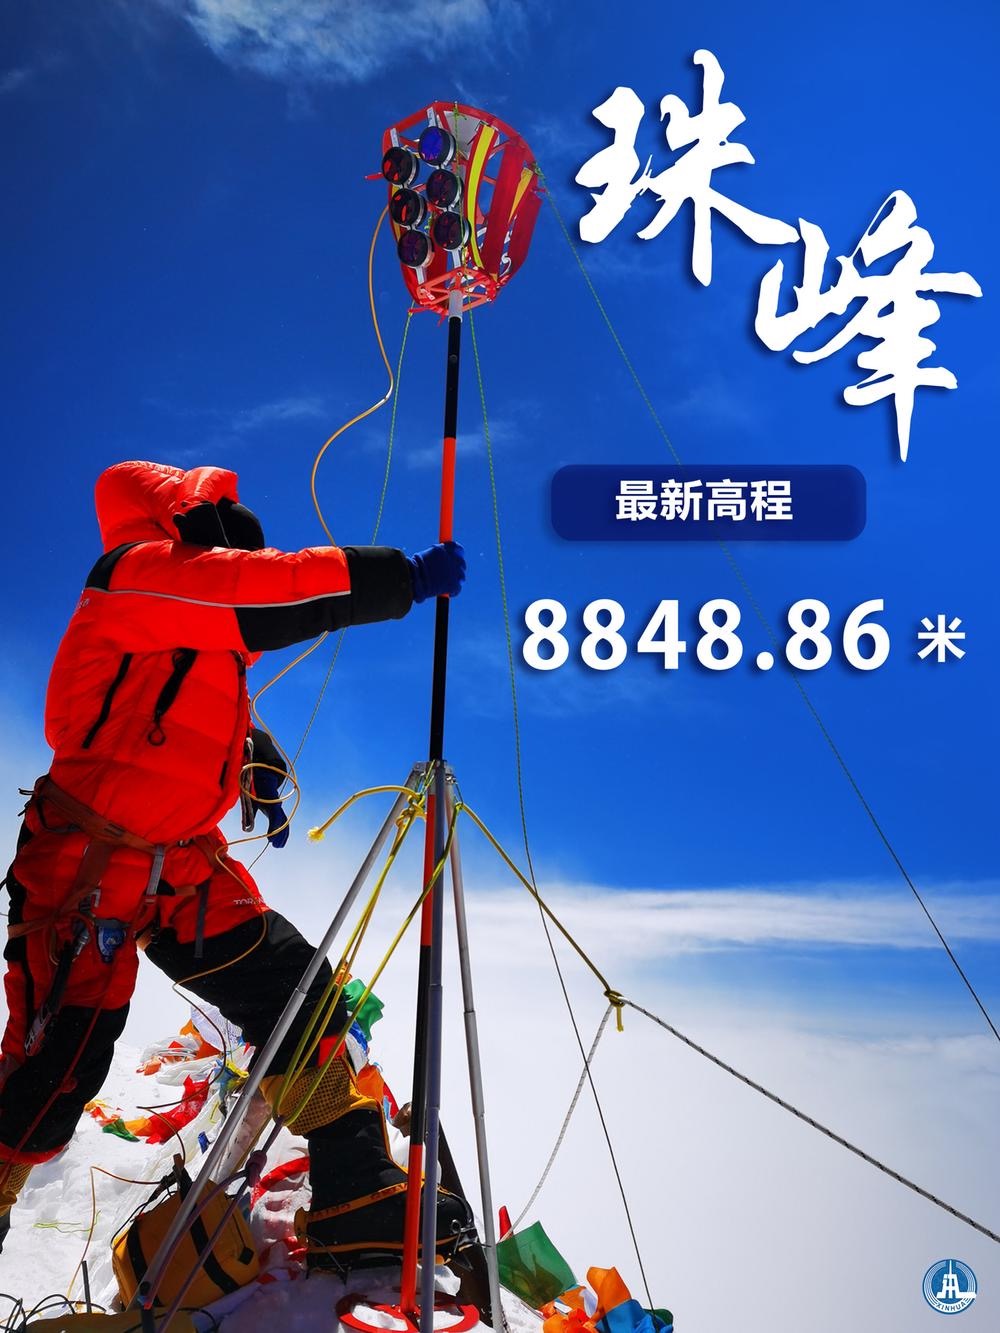 8848.86米！珠峰新高程公布 测量结果助力地球科研